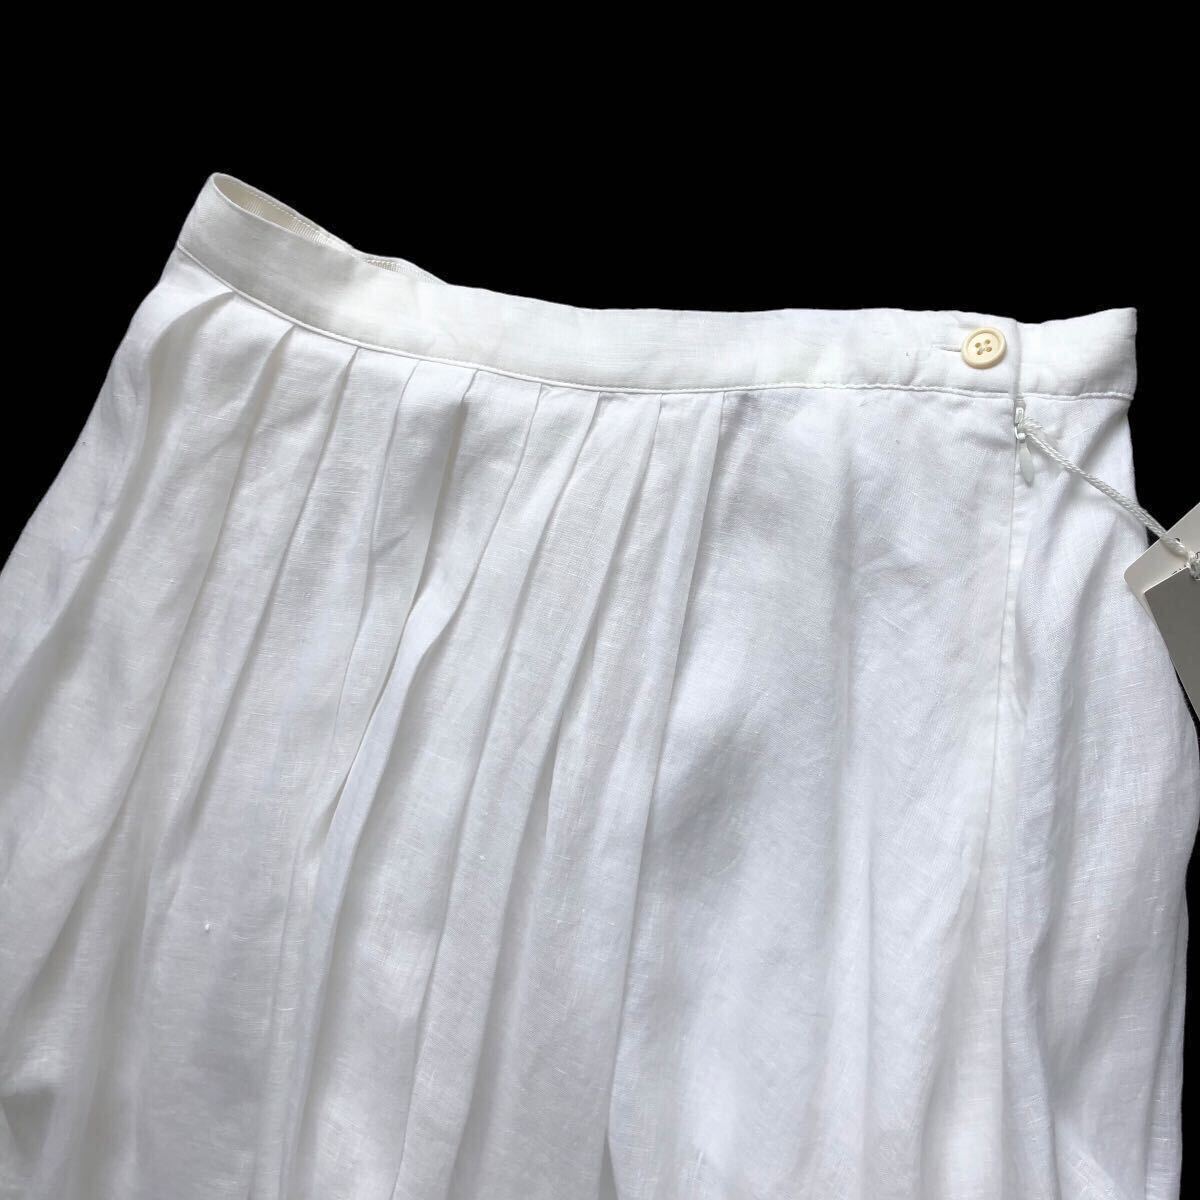 新品 MARGARET HOWELL マーガレットハウエル リネン100% ギャザータックフレア プリーツスカート 麻 膝丈 Lサイズ3 タグ付き 白ホワイト